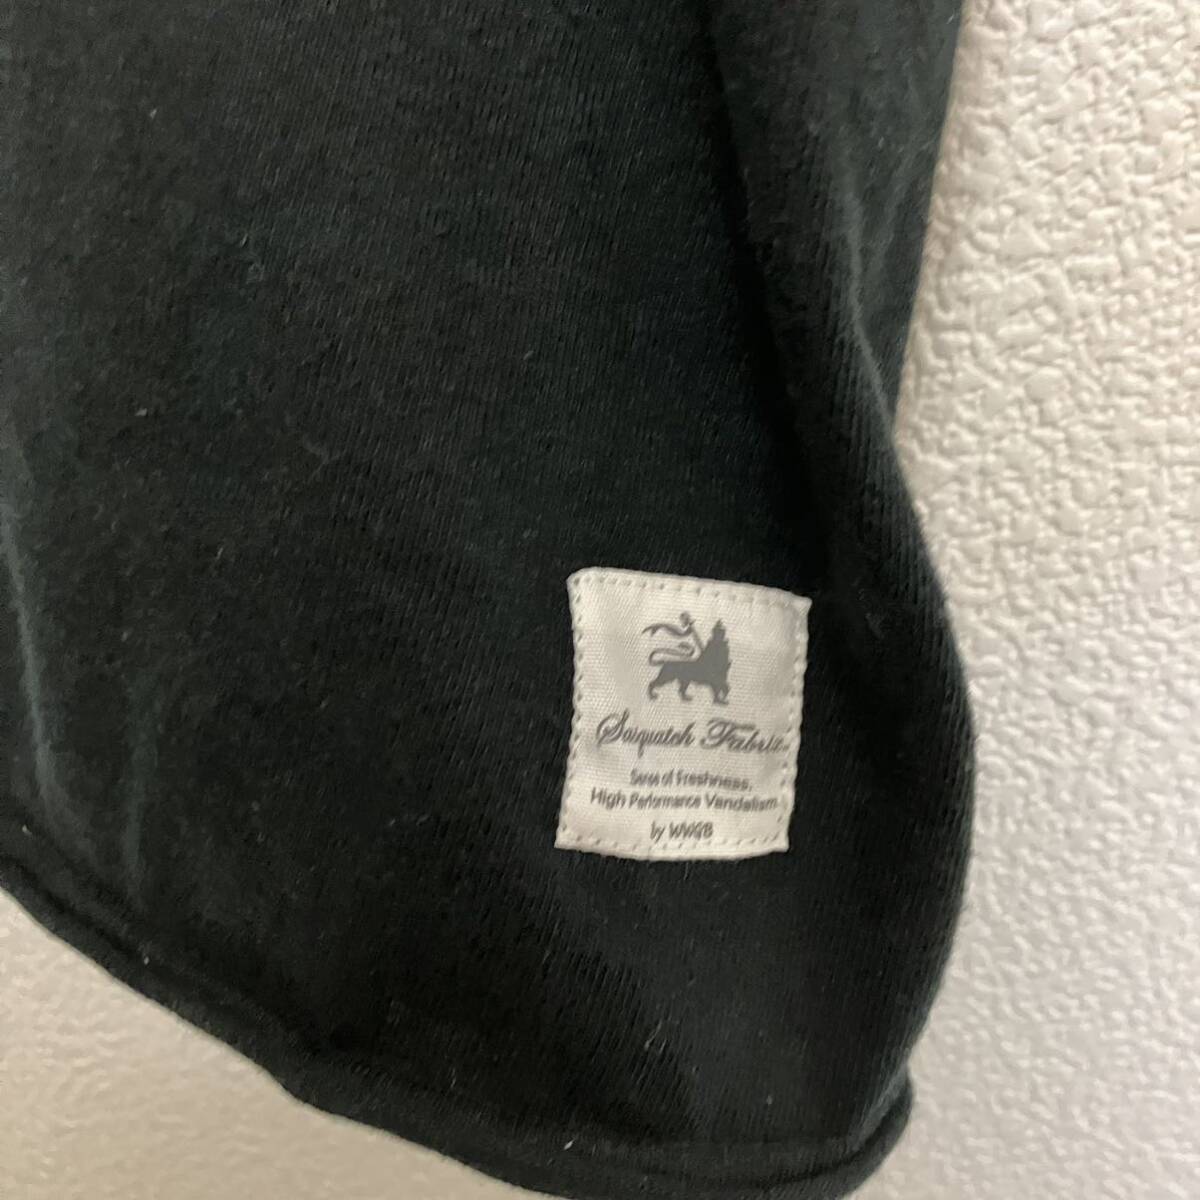 blackmeans sasquatch fabrics tシャツ ブラックミーンズ サスクワッチ・ファブリクス カットオフ ブラック Mサイズの画像4